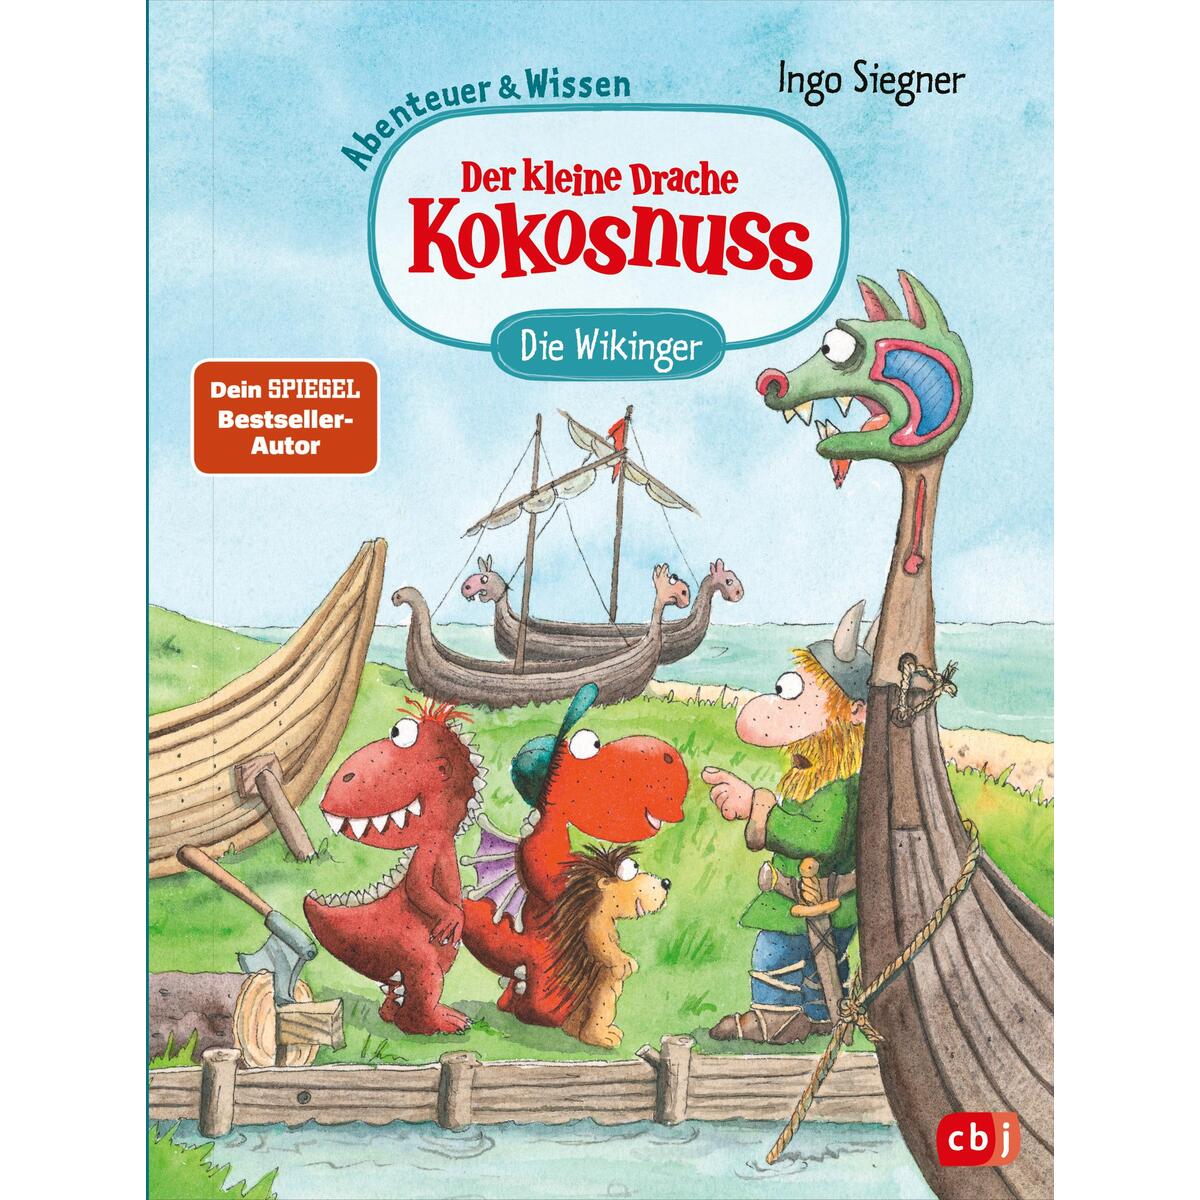 Der kleine Drache Kokosnuss - Abenteuer & Wissen - Die Wikinger von cbj